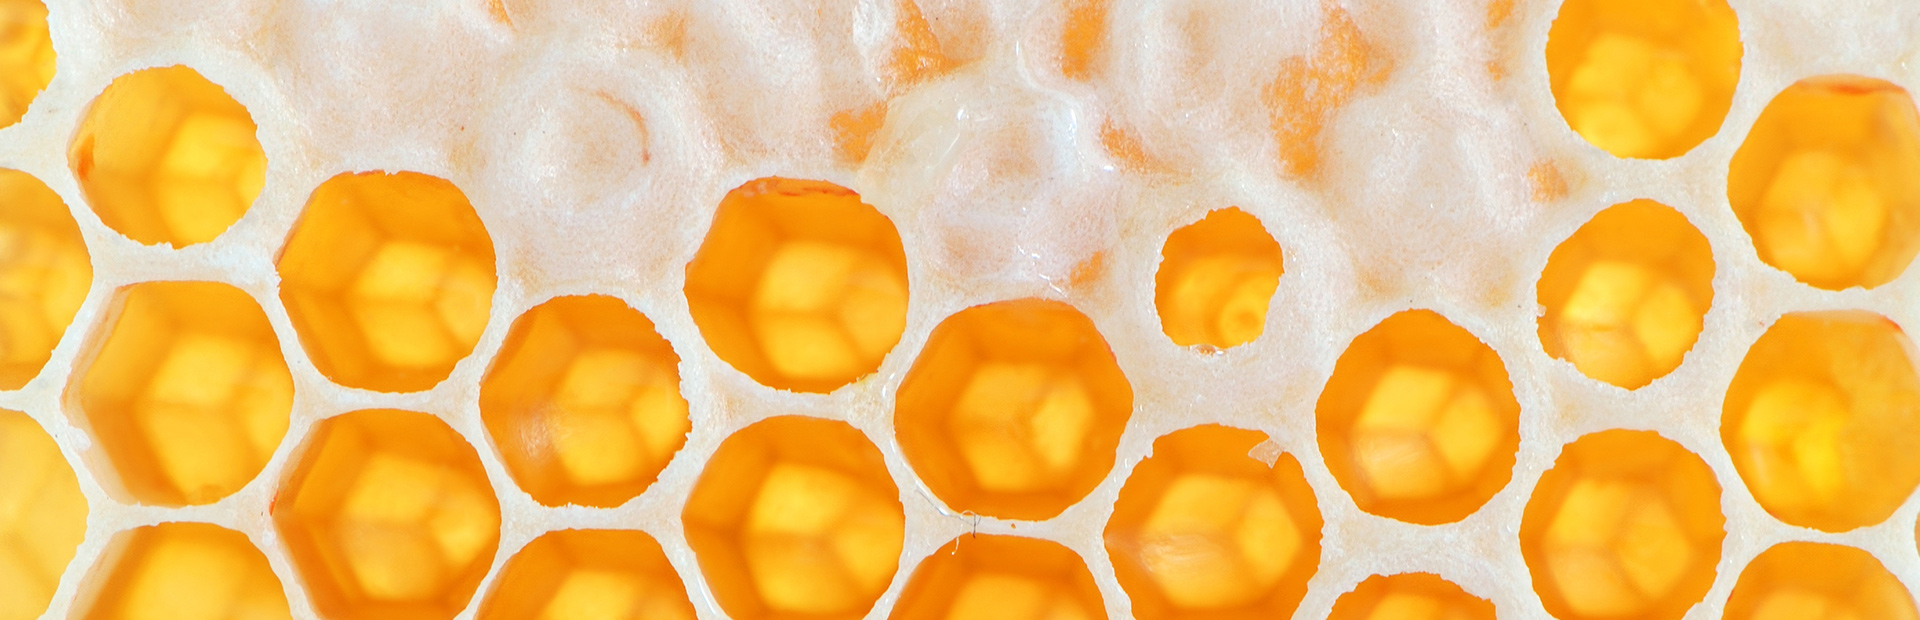 Zbliżenie plastra miodu, żółtych sześciokątnych komórek budowanych przez pszczoły z wosku. Pomiędzy komórkami biała ciecz.   